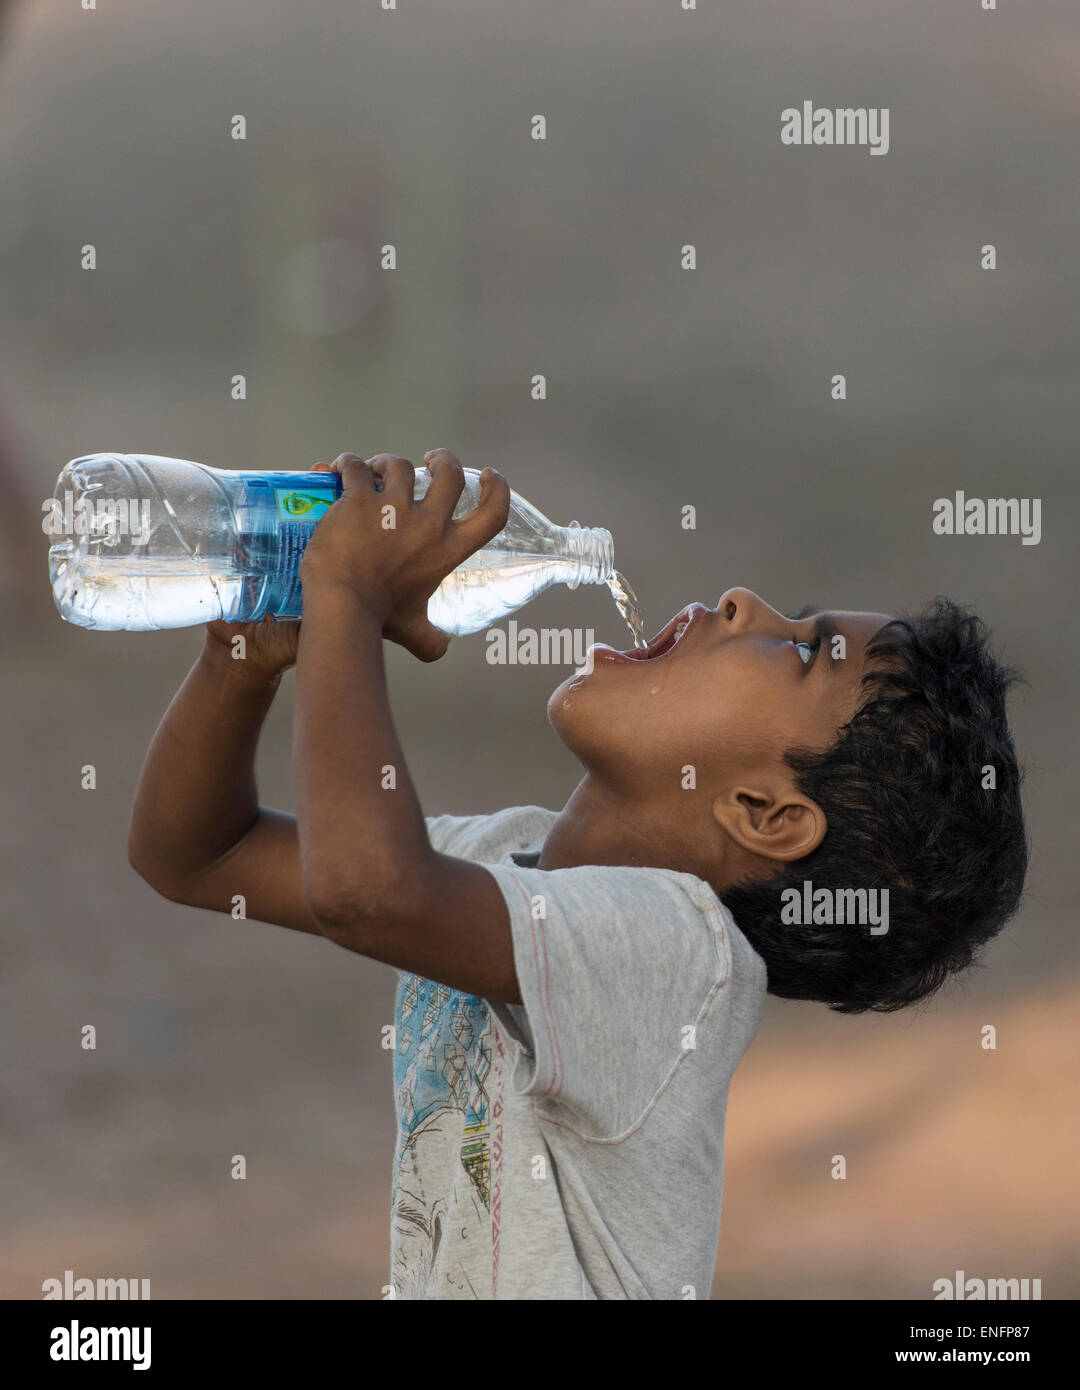 Garçon l'eau potable de la bouteille en plastique, fort Cochin, Kochi, Kerala, Inde Banque D'Images